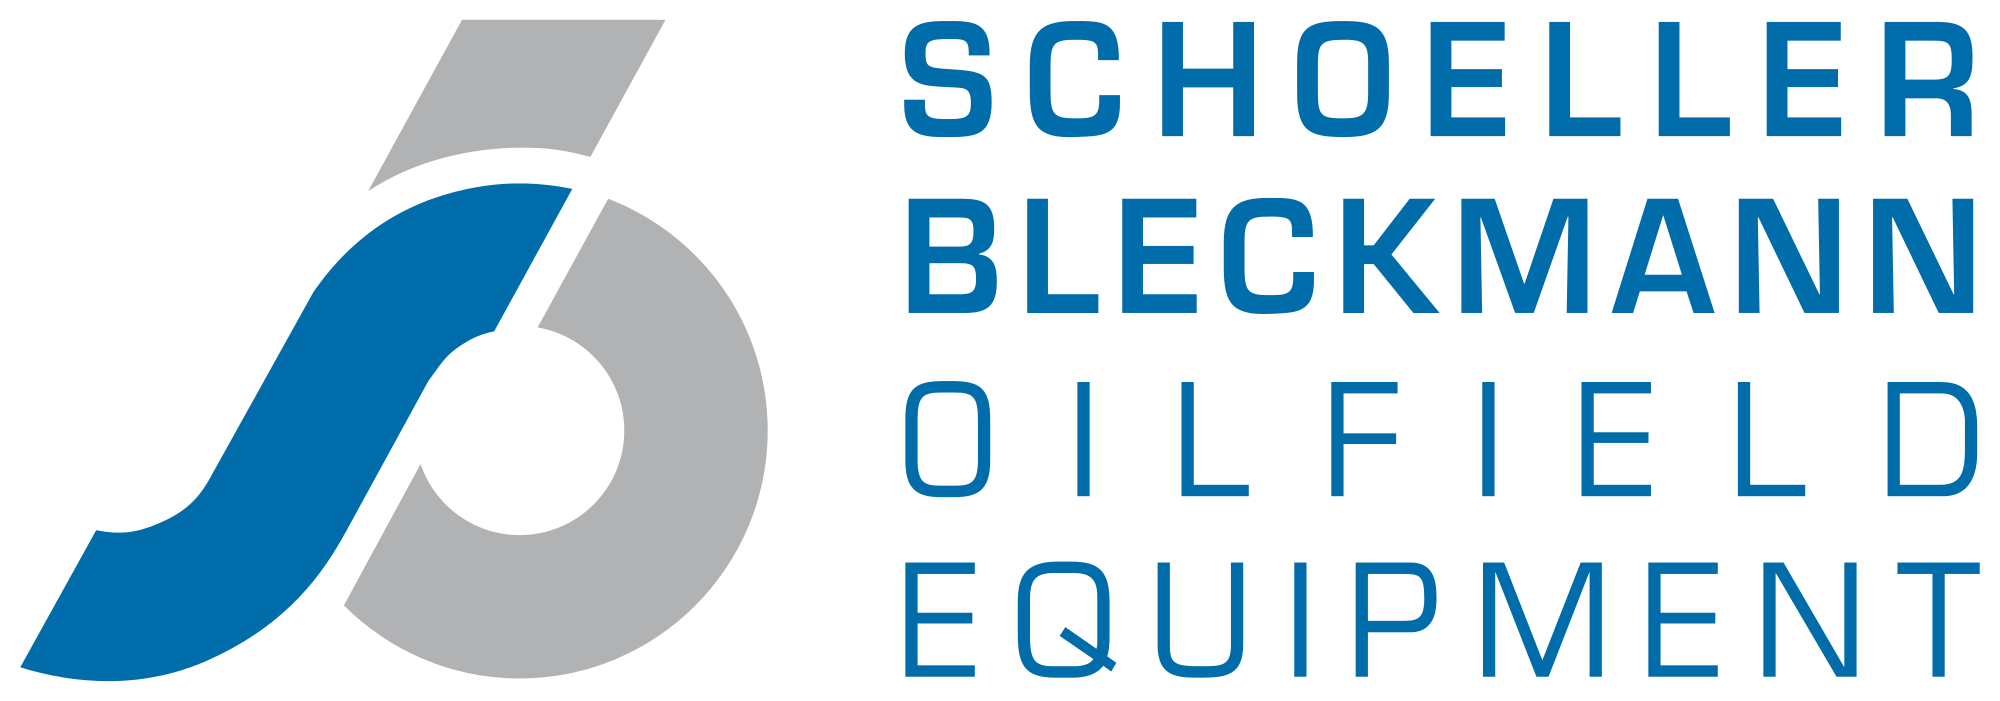 Schoeller-Bleckmann_Oilfield_Equipment_logo.svg.png